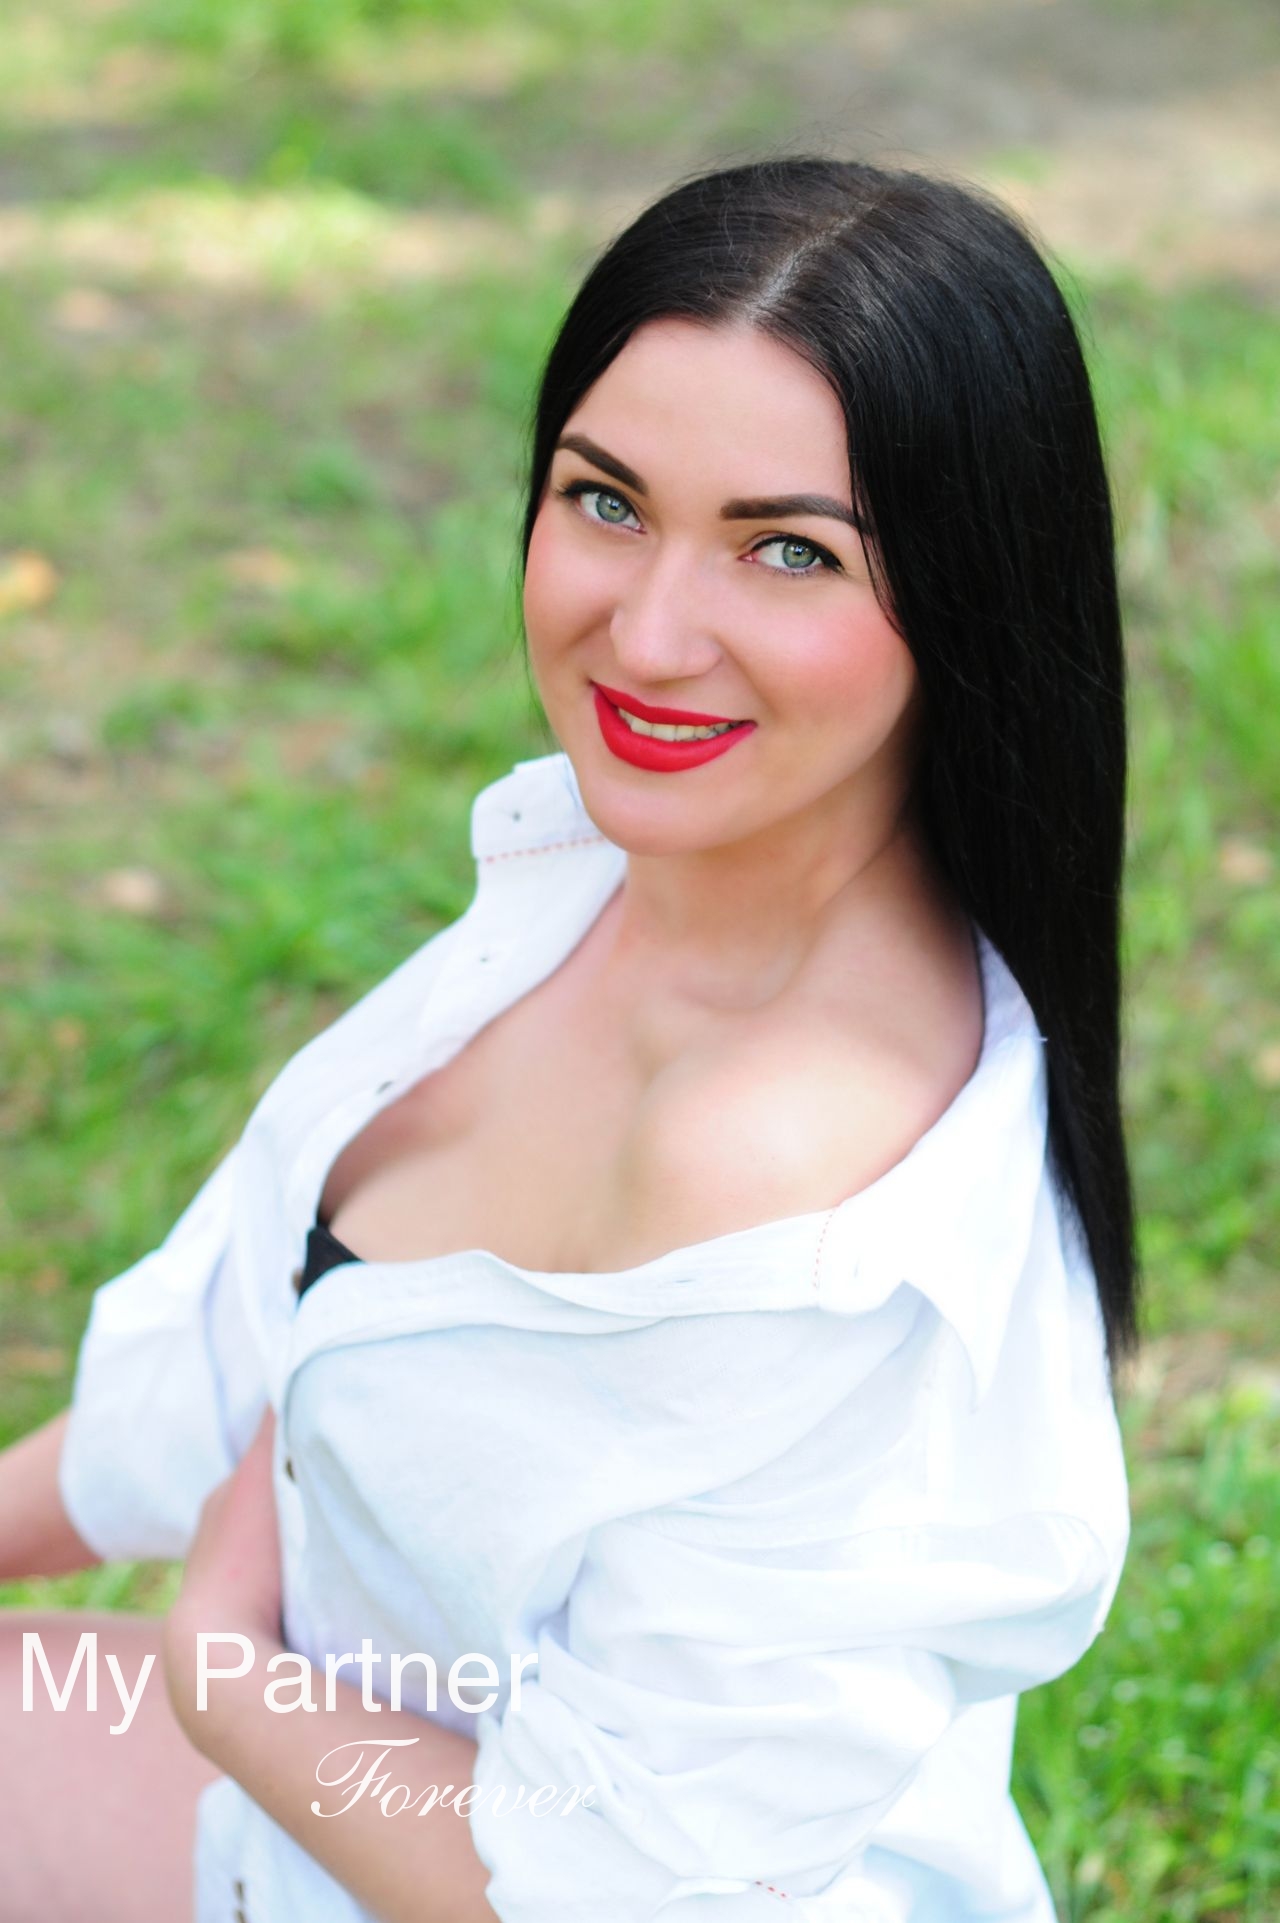 Gorgeous Woman from Ukraine - Yuliya from Cherkasy, Ukraine